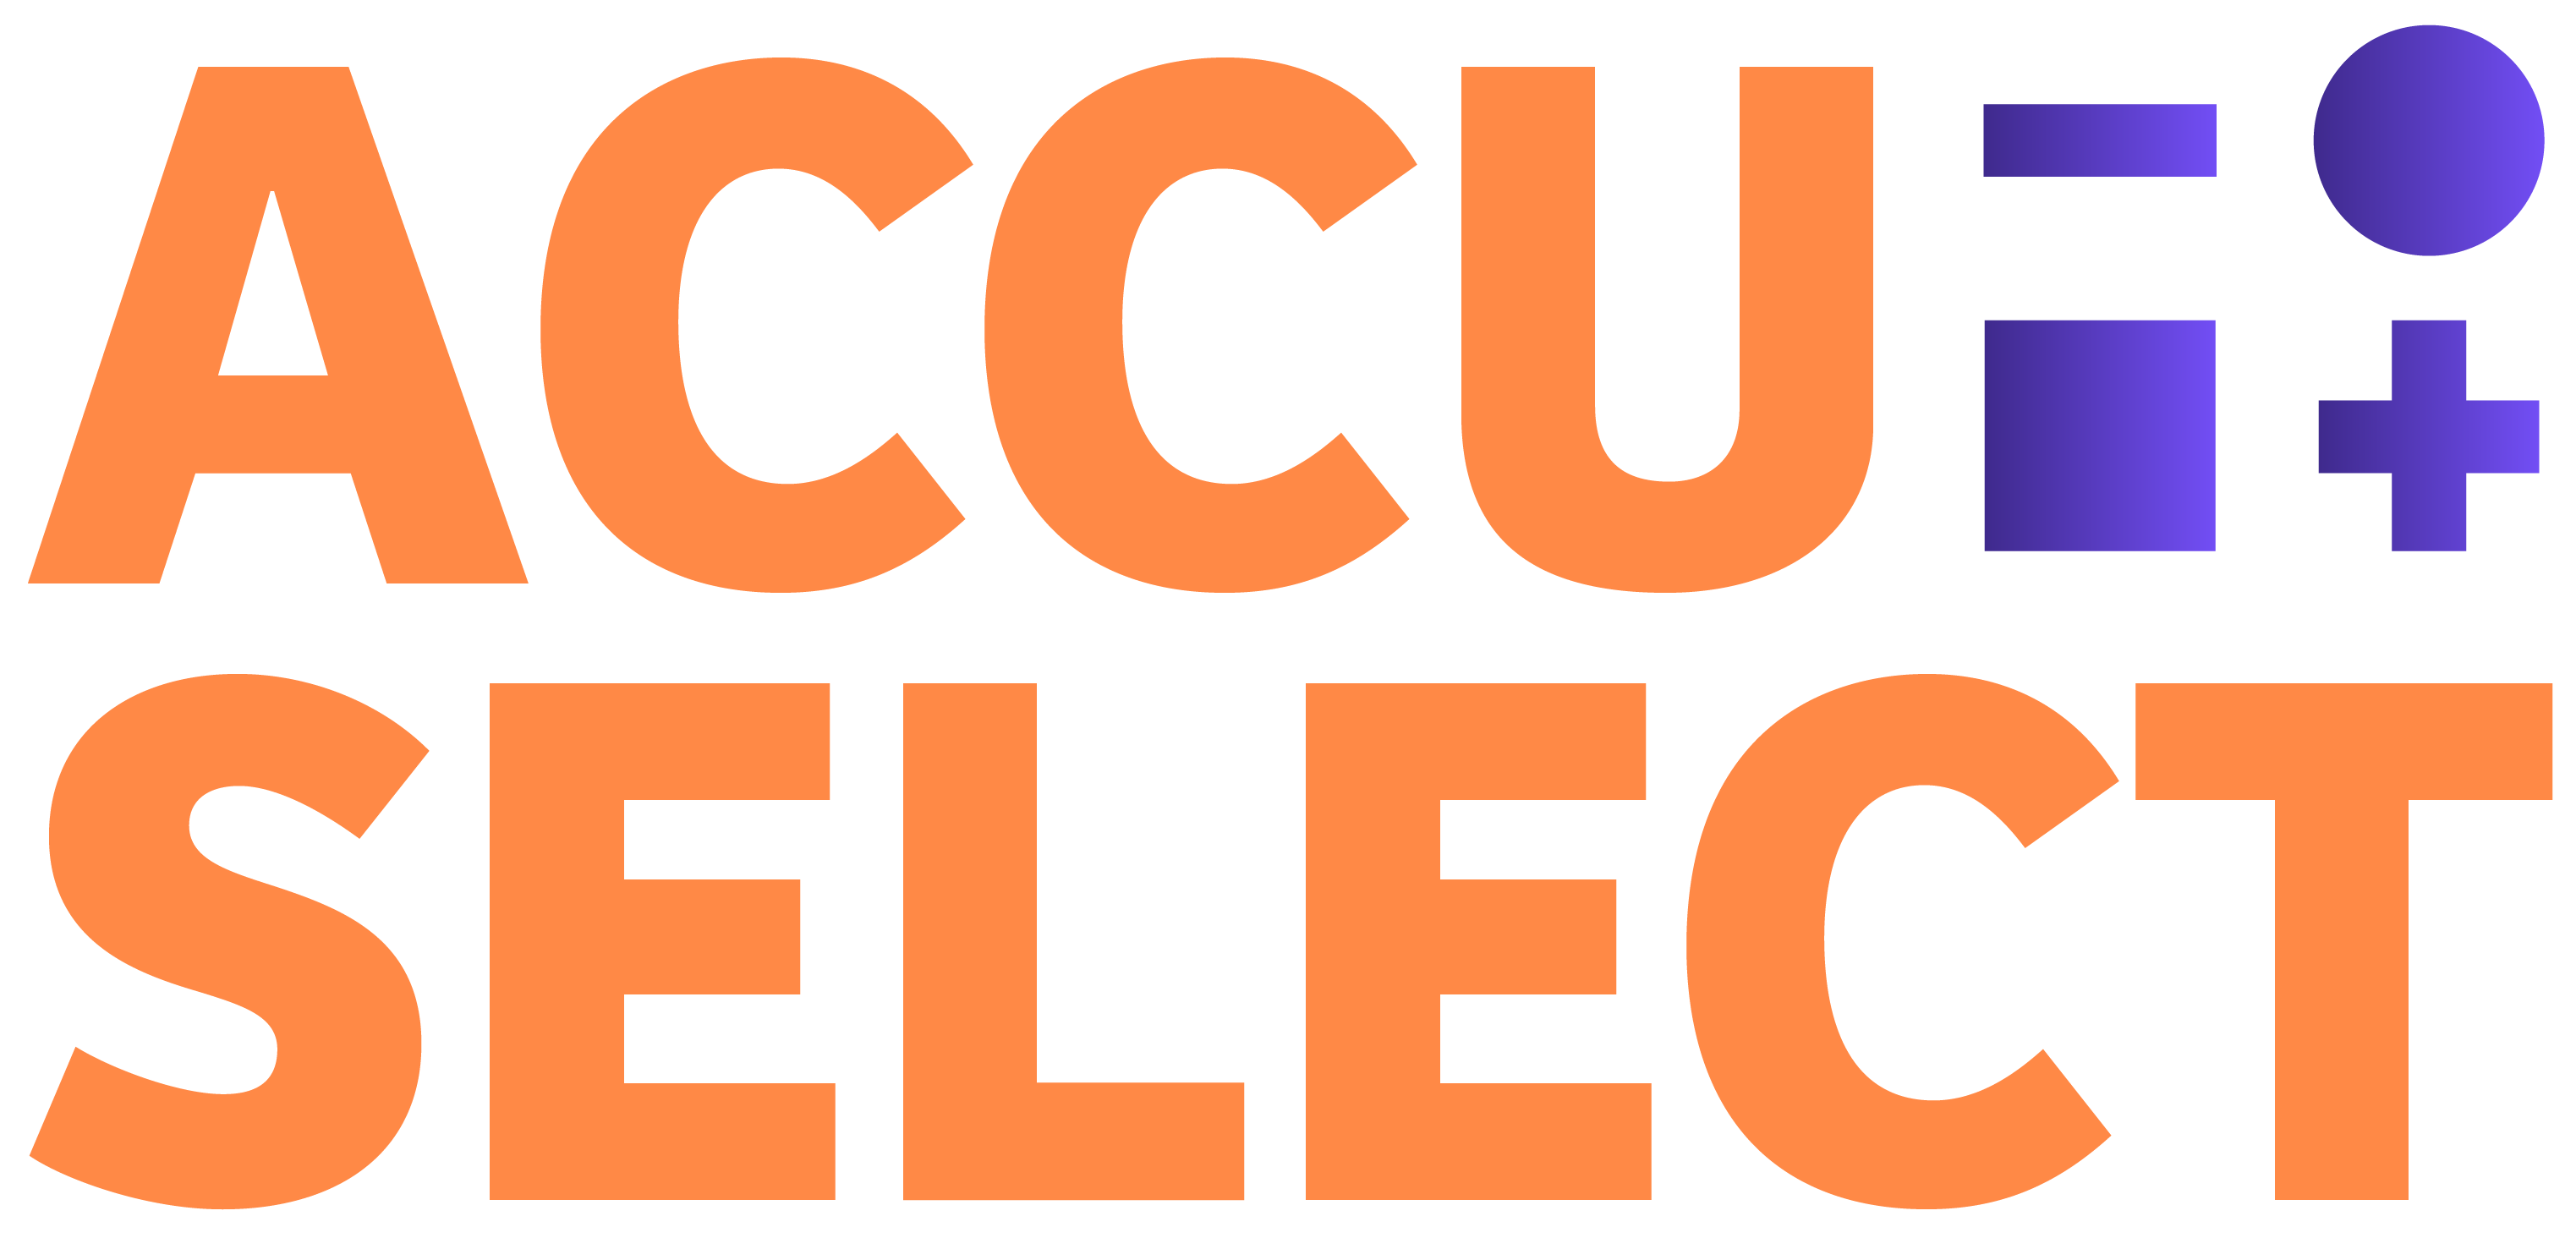 Accuselect logo, besparen met een thuisbatterij